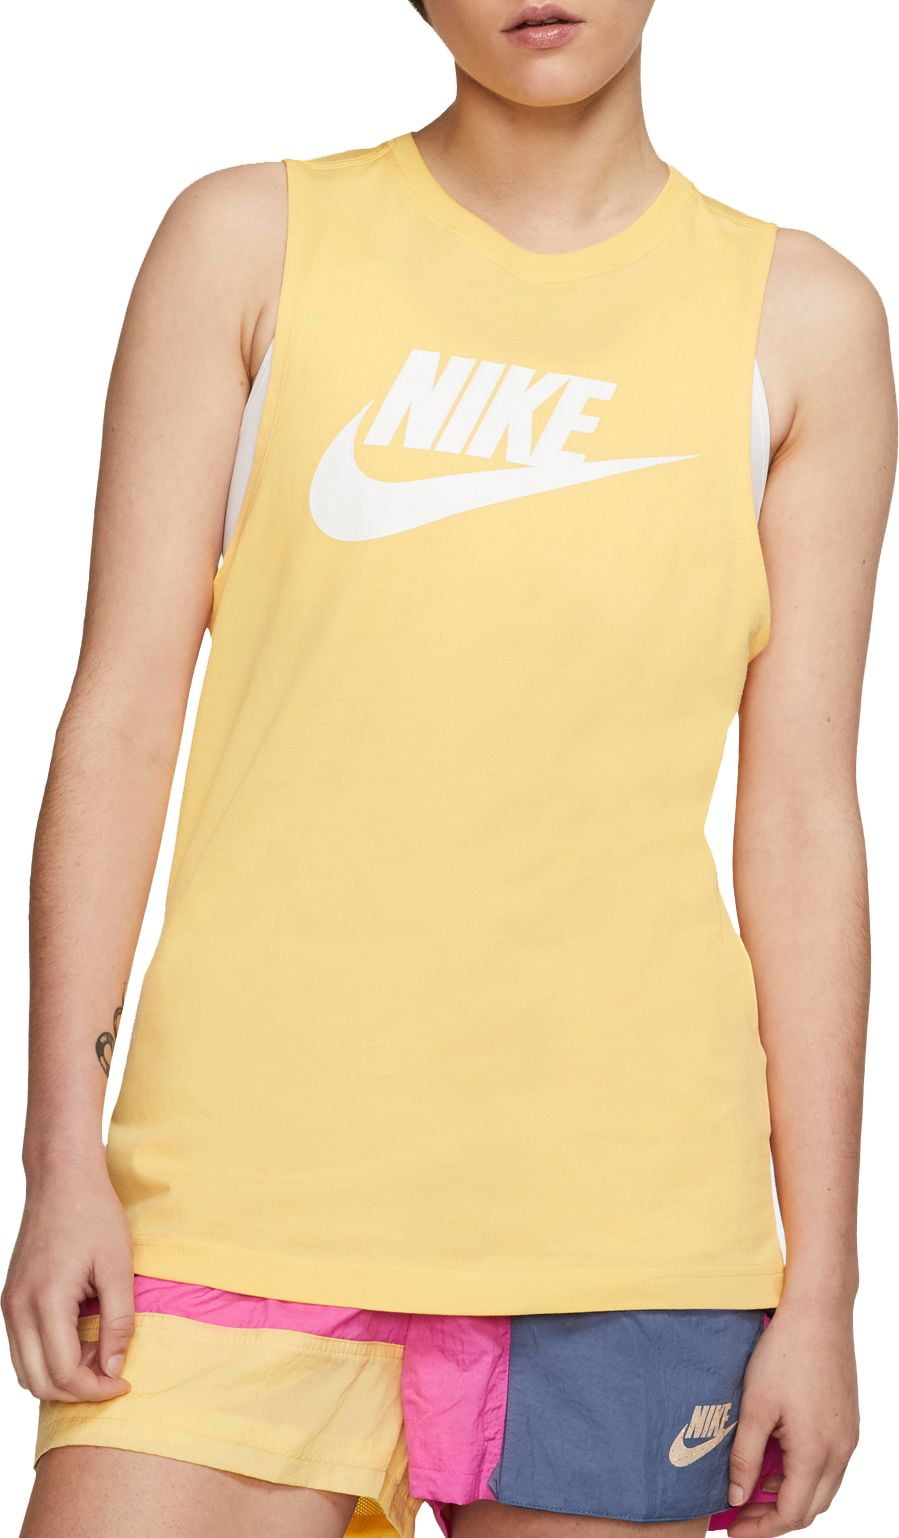 nike women's sportswear sleeveless muscle tank top